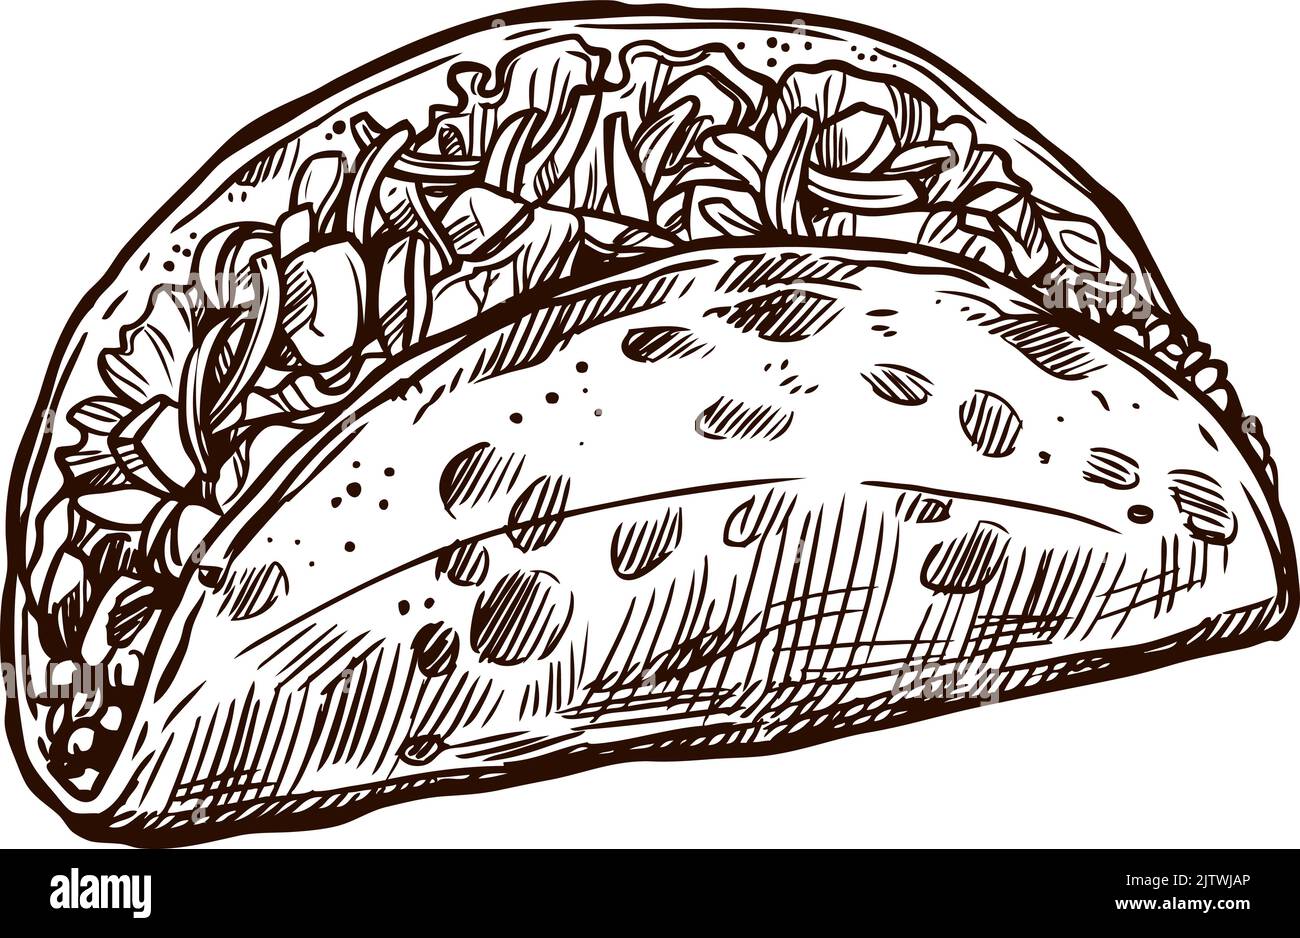 Taco de vacances, symbole d'esquisse vectoriel. Cinco de Mayo au Mexique ou fête du 5 mai Fiesta, symbole traditionnel de la fête nationale des tacos tortilla mexicaines, dessiné à la main Illustration de Vecteur